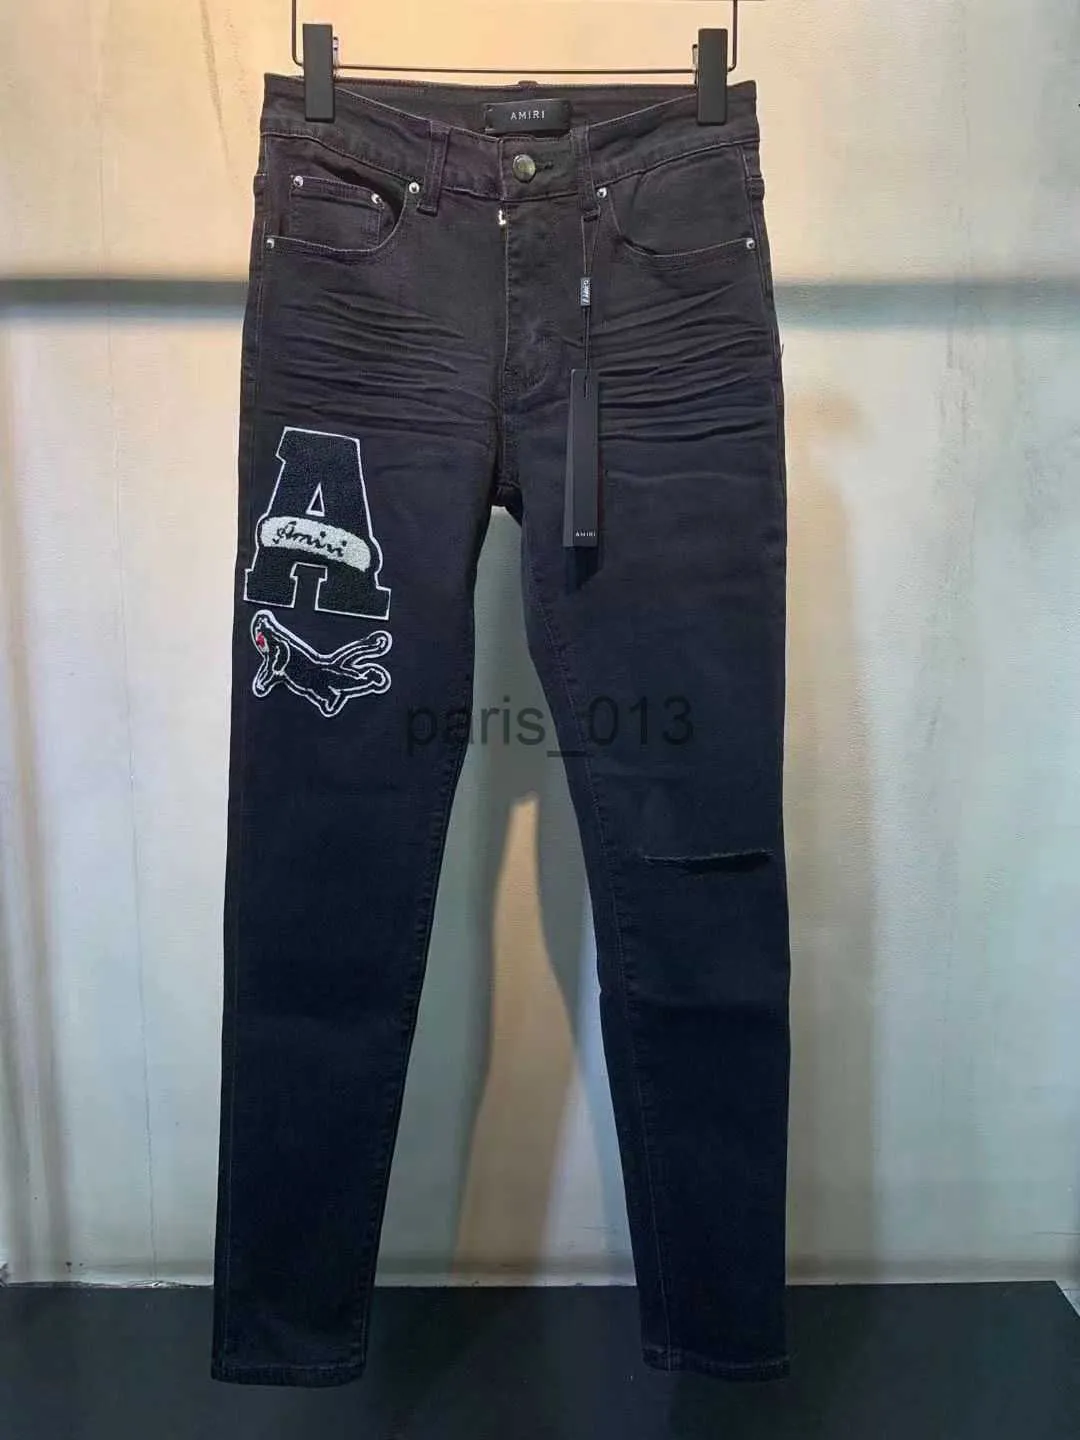 Jeans masculinos 2021 homens designer jeans angustiado rasgado motociclista slim fit motocicleta denim para homens de alta qualidade moda jean mans calças para hommes jeans reais # 689 x0909